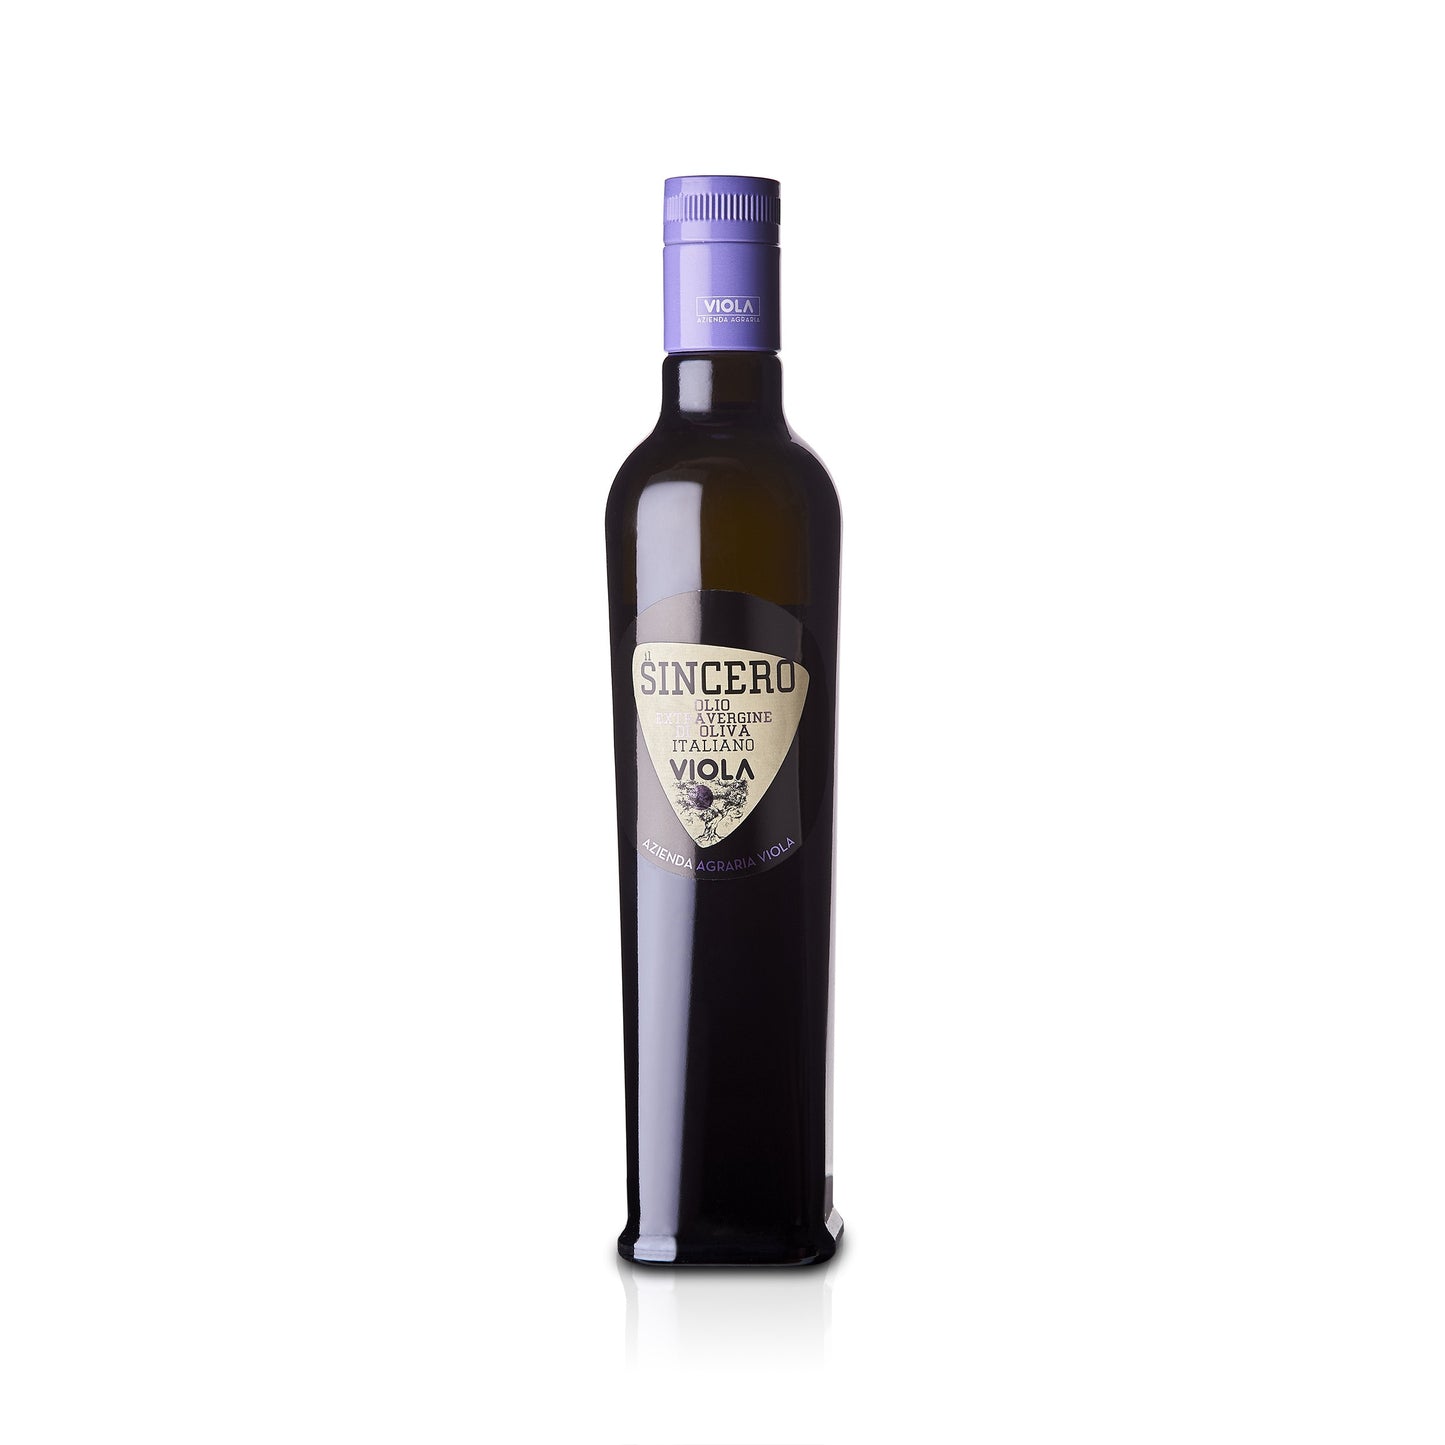 Viola Il Sincero  Extra Virgin Olive Oil 500ml VLA 008